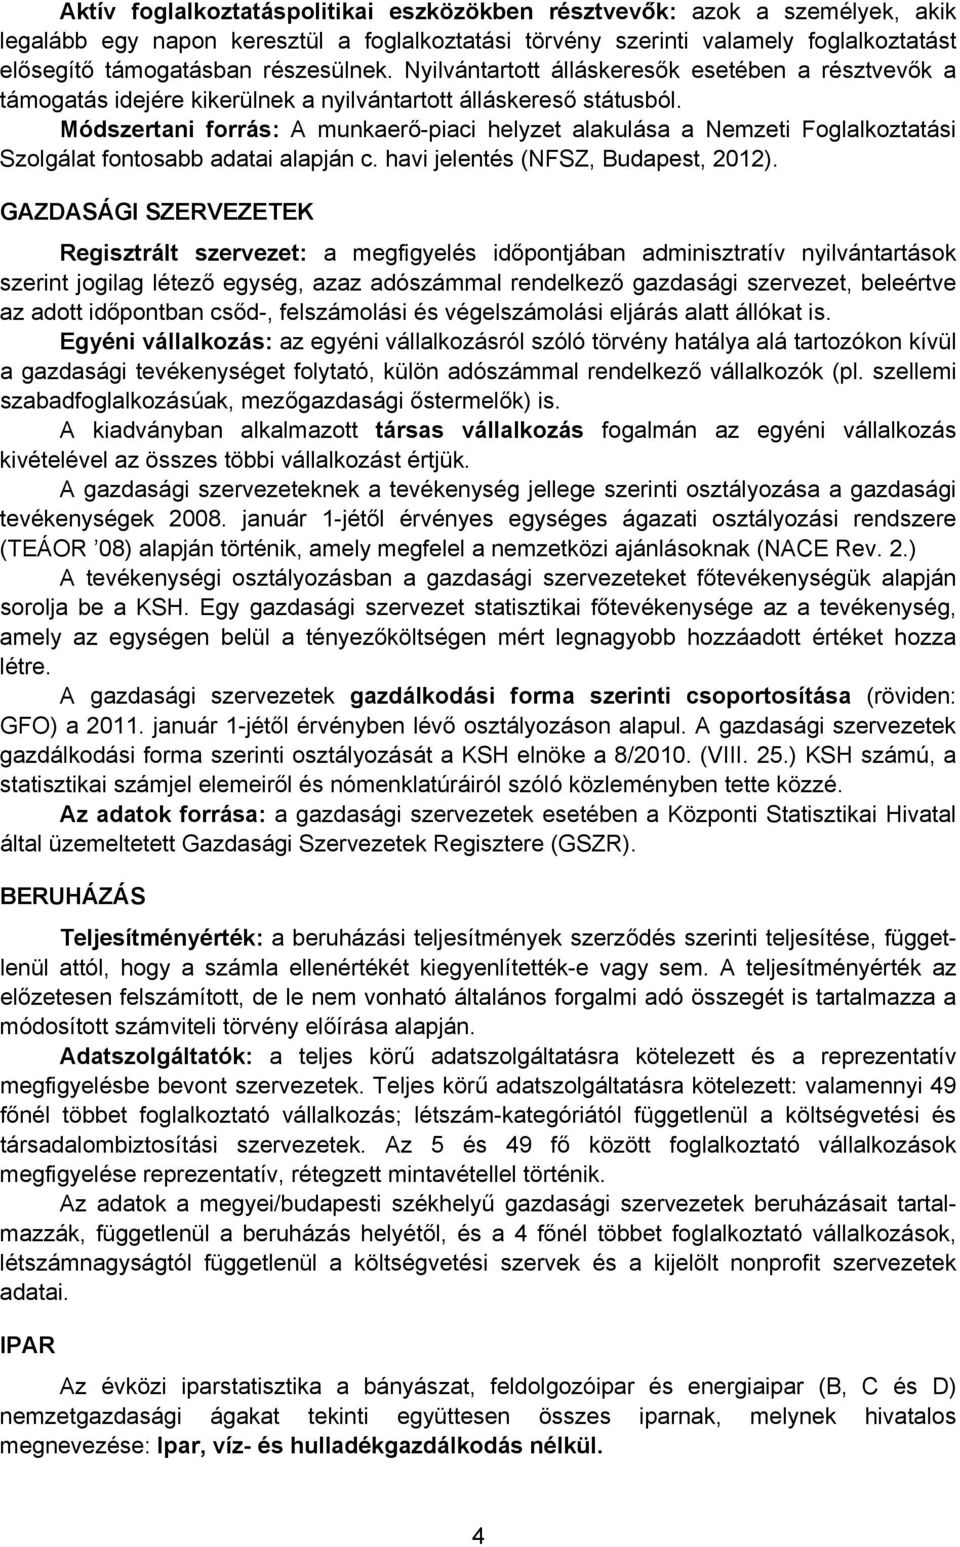 Módszertani forrás: A munkaerő-piaci helyzet alakulása a Nemzeti Foglalkoztatási Szolgálat fontosabb adatai alapján c. havi jelentés (NFSZ, Budapest, 2012).